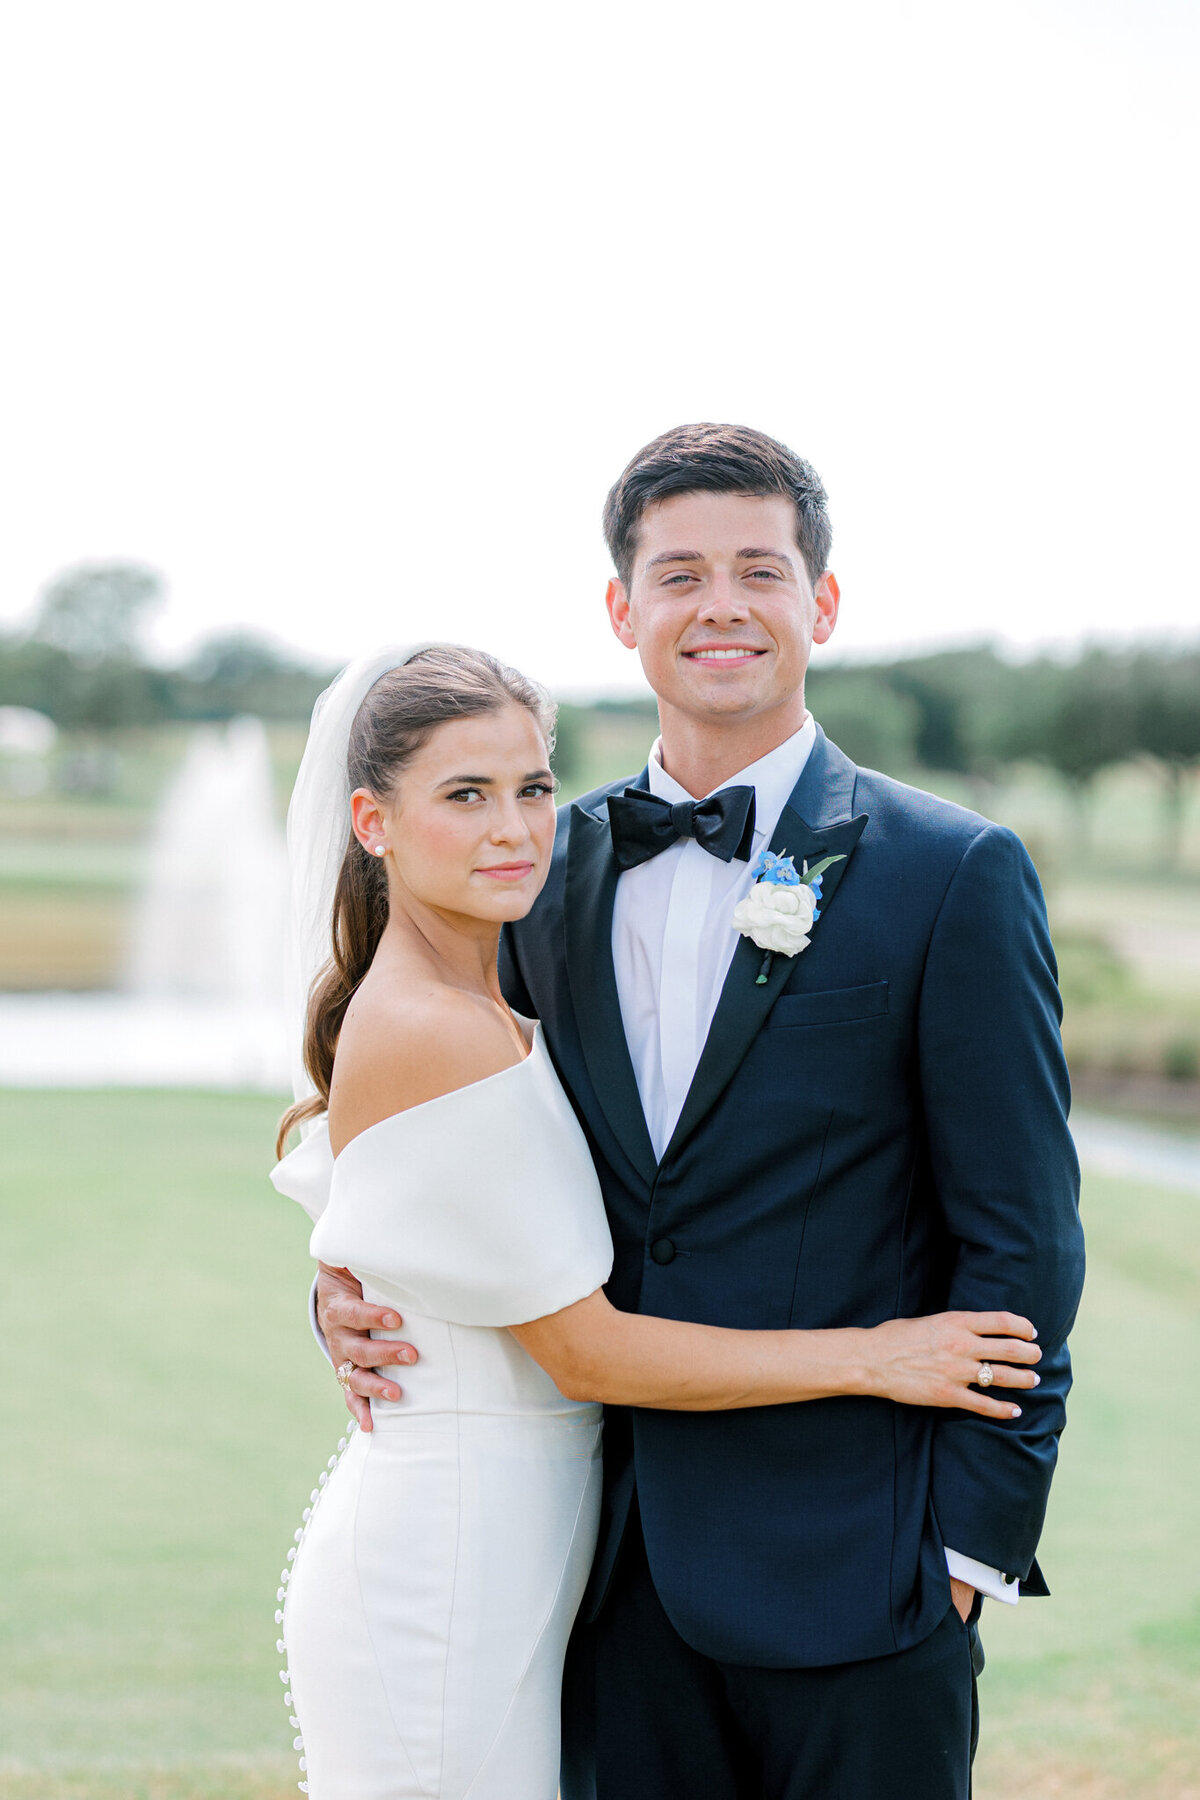 Annie & Logan's Wedding | Dallas Wedding Photographer | Sami Kathryn Photography-141